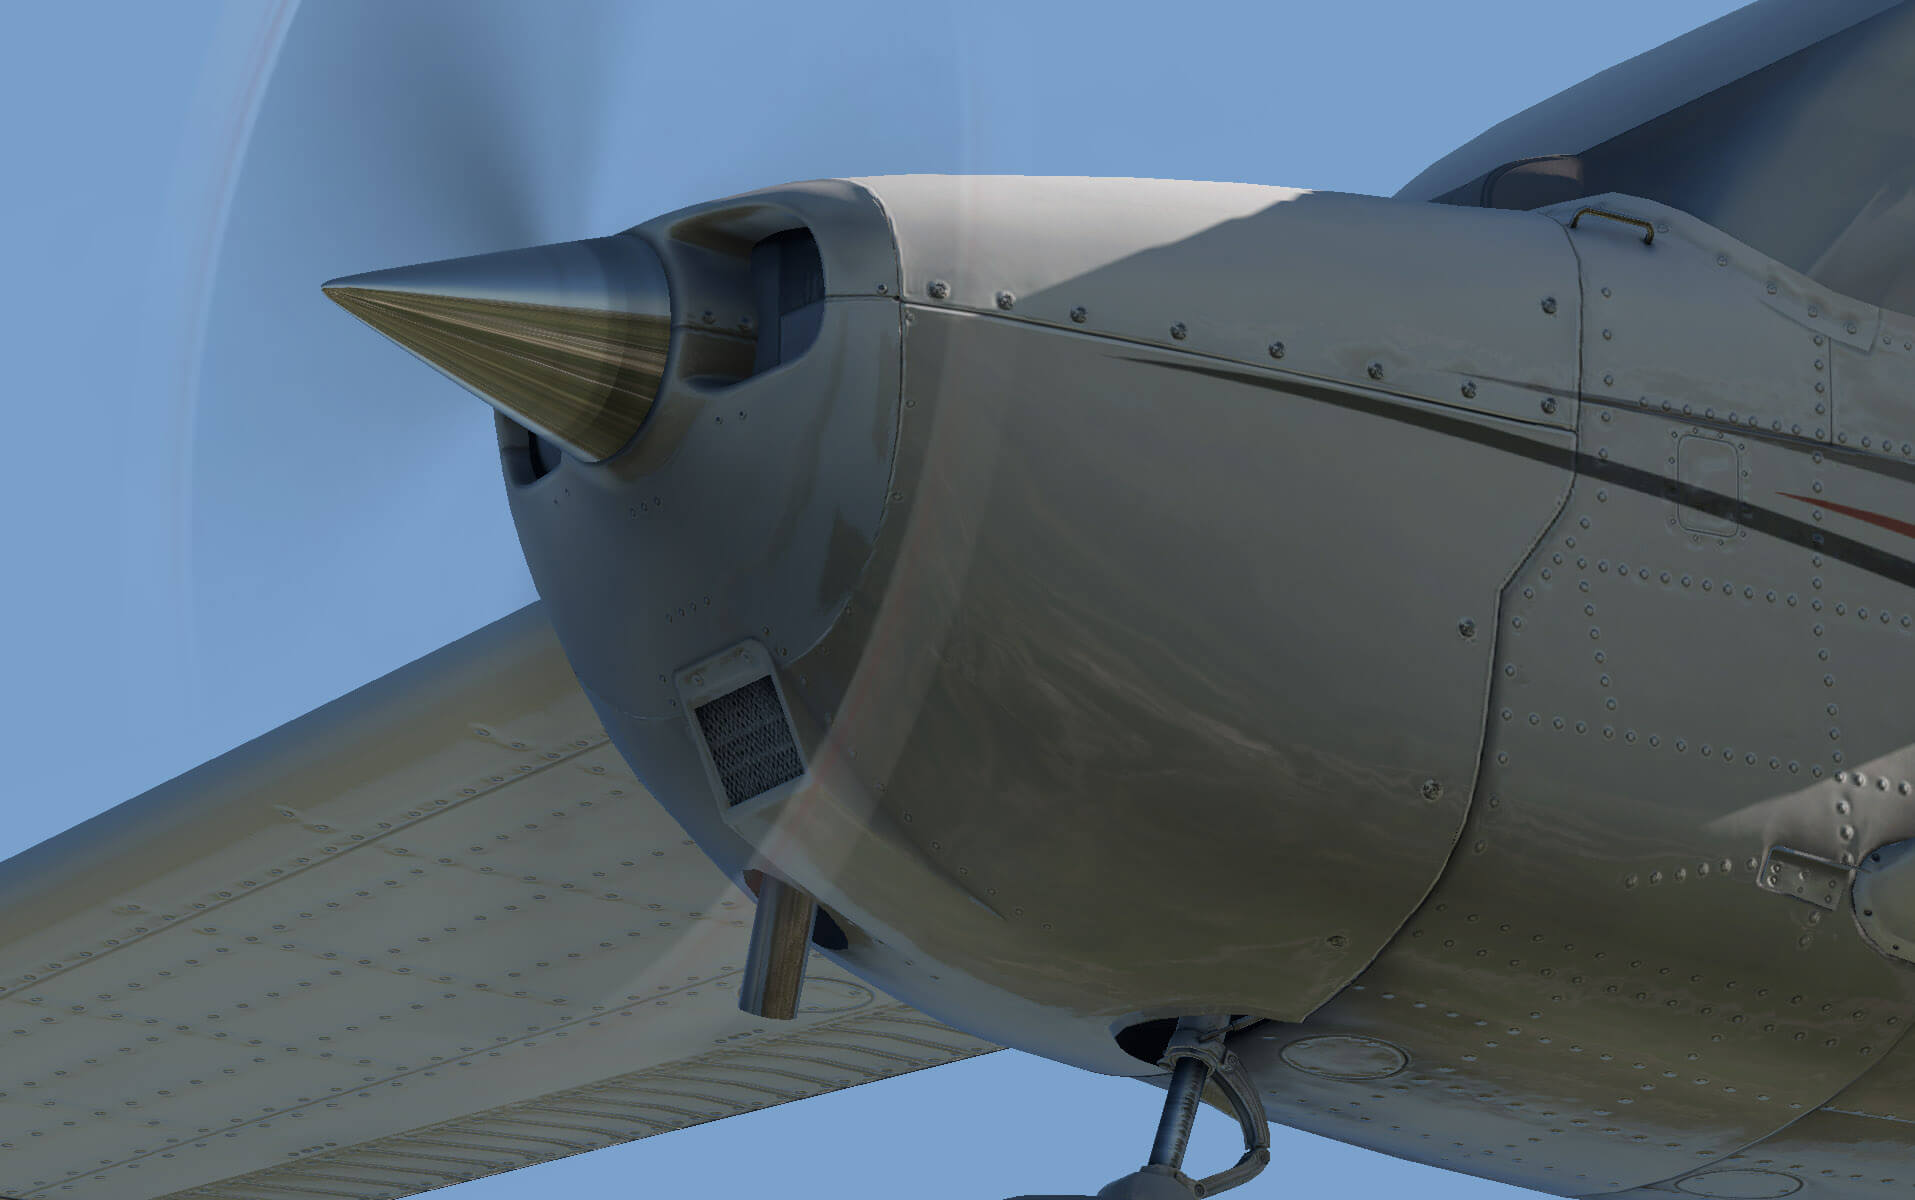 http://www.x-plane.com/wp-content/uploads/2016/09/Cessna_172SP_propeller_close_up.jpg